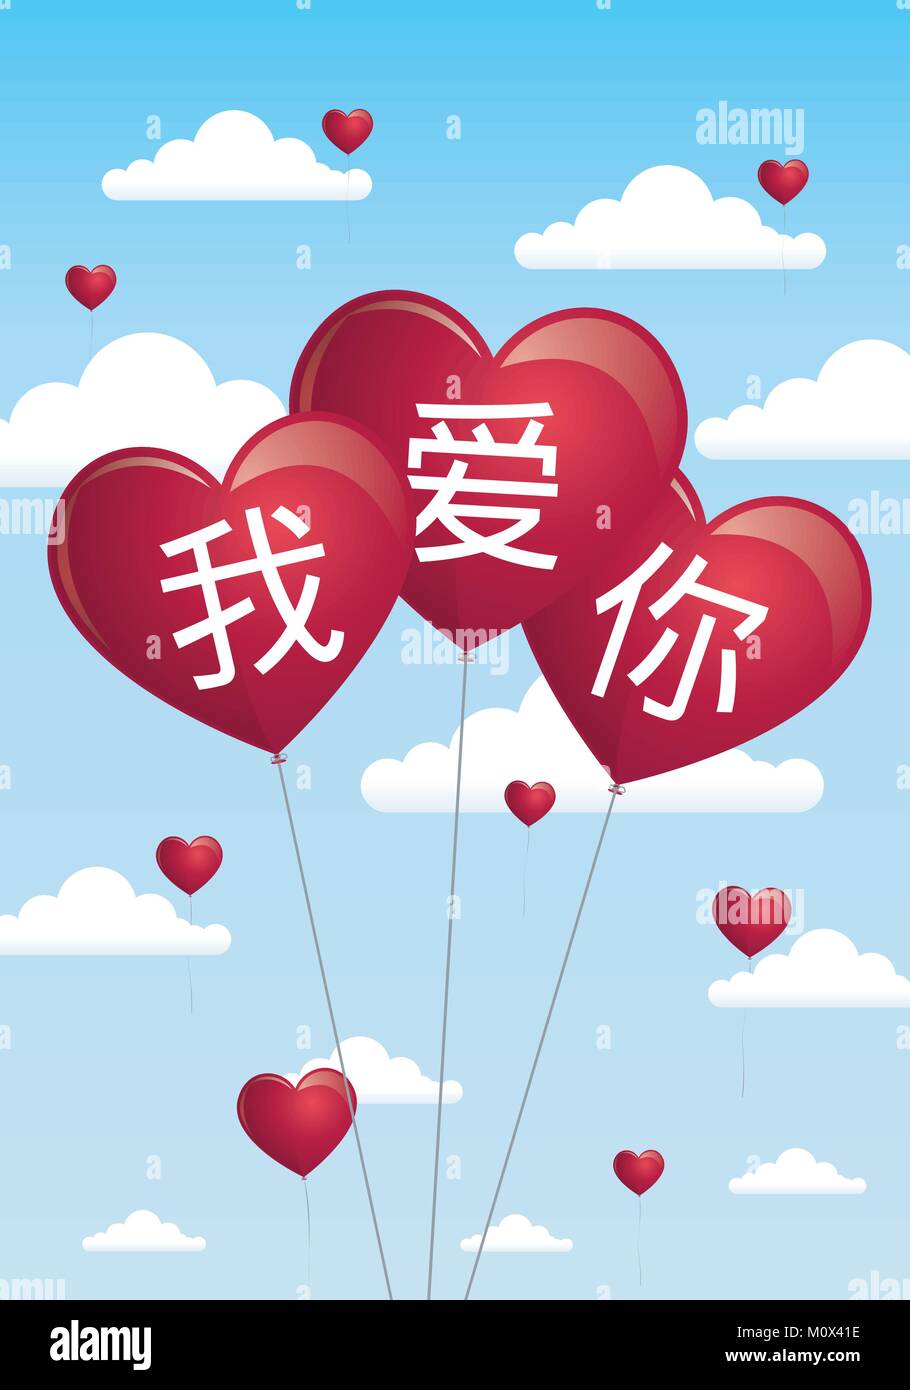 Satz ICH LIEBE DICH in Chinesischer Sprache in 3 rote Herzen geschrieben - geformte Ballons fliegen auf dem Hintergrund der blauen Himmel mit weißen Wolken. Stock Vektor